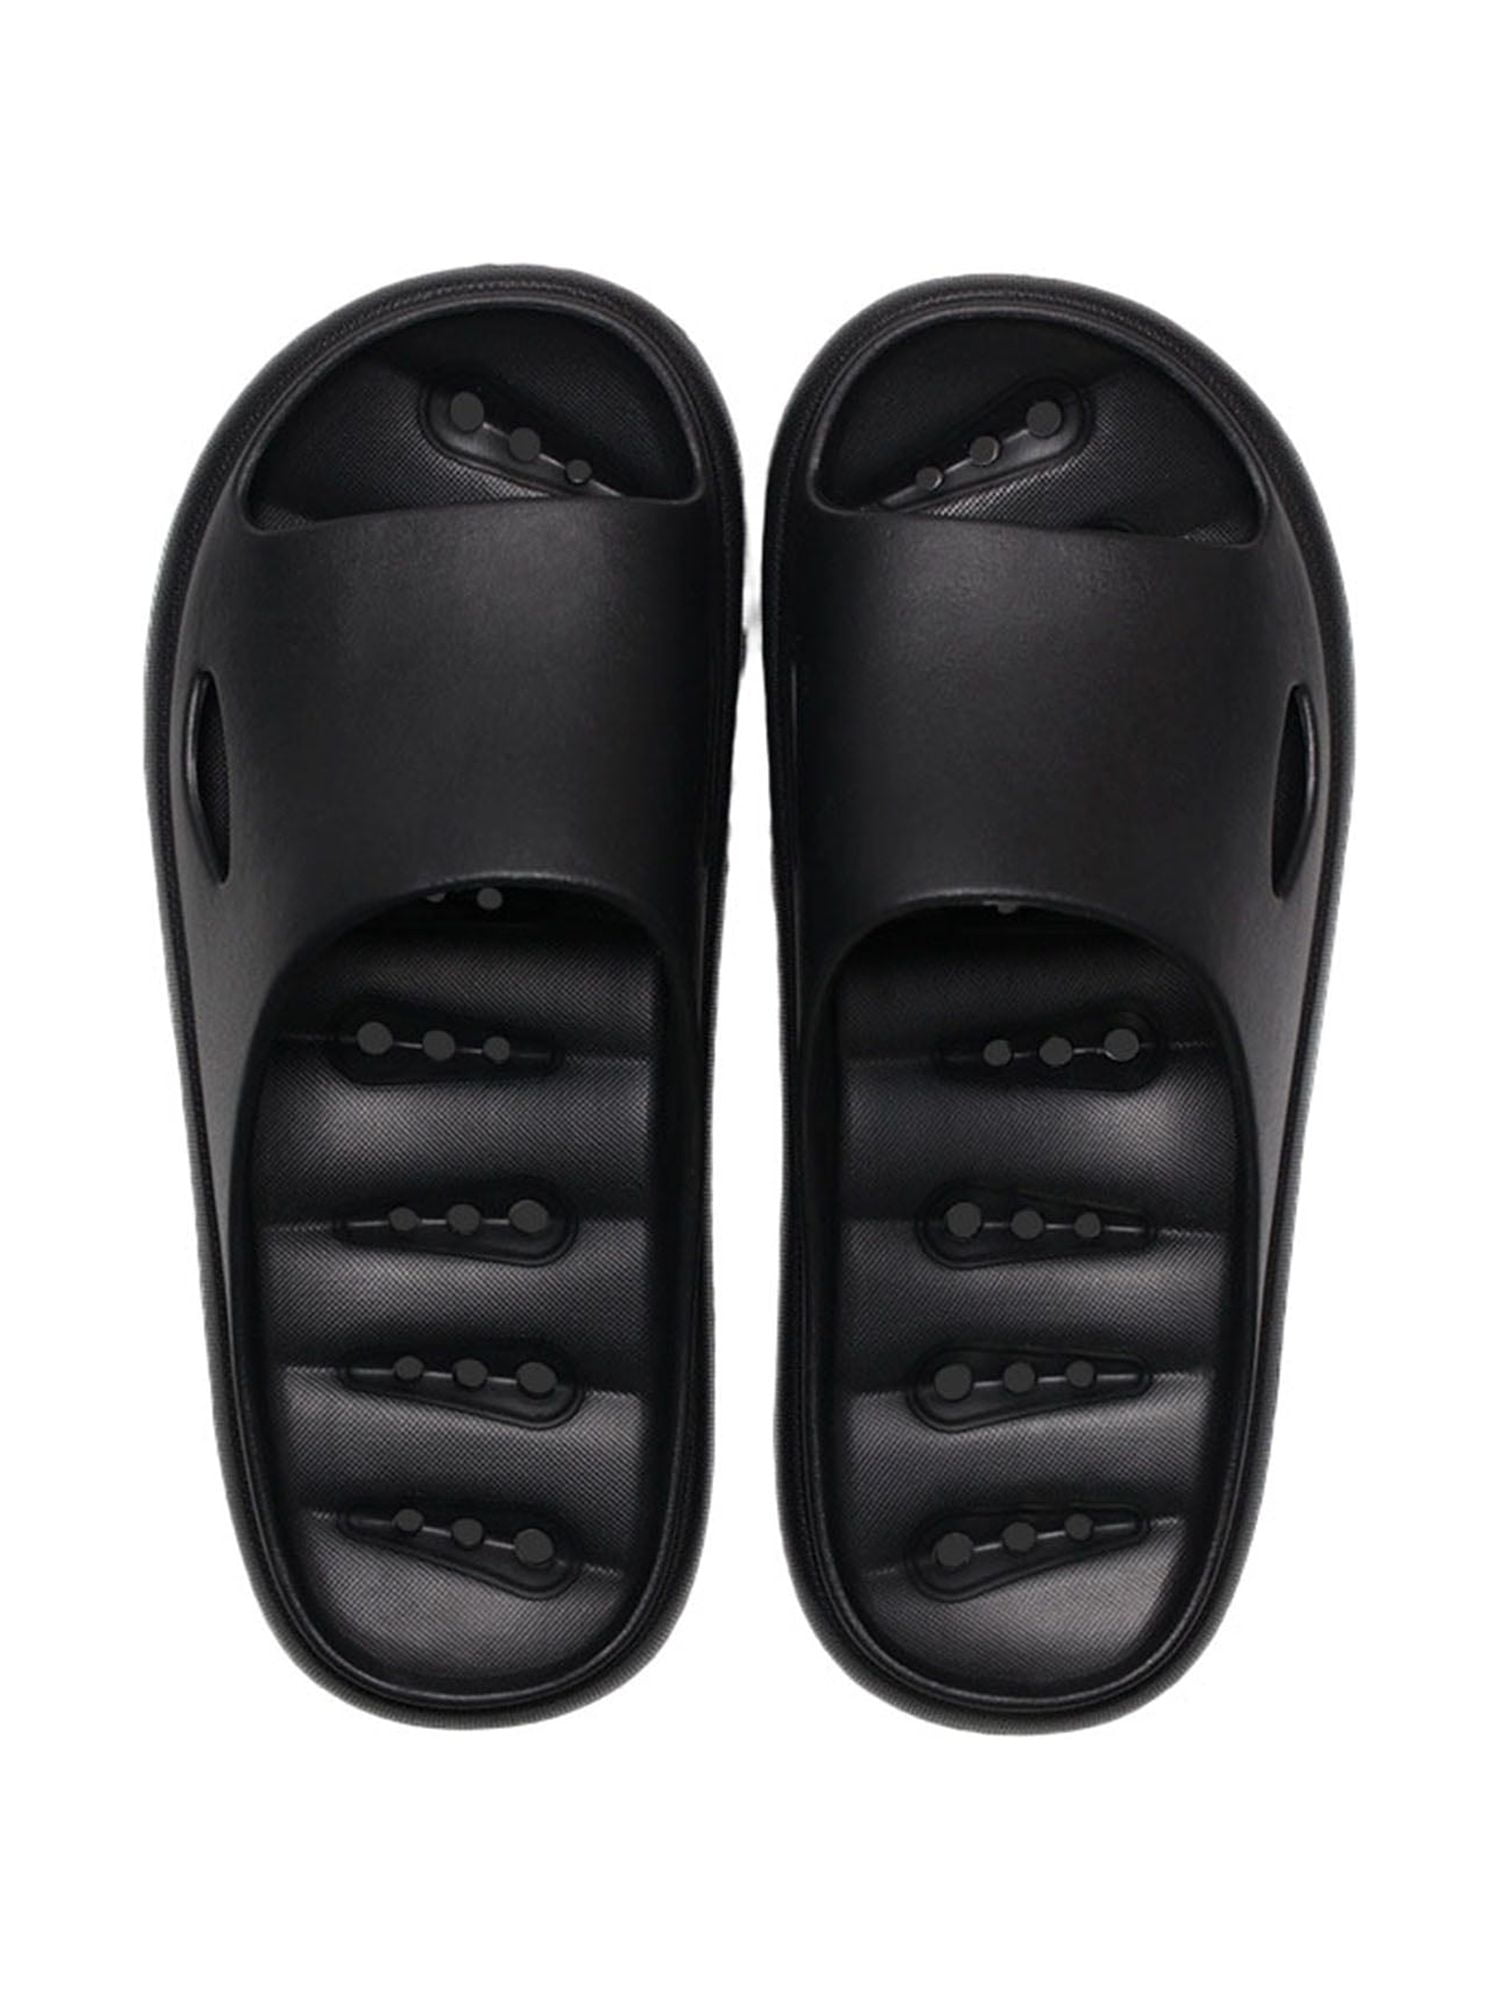 LUXUR Men's Slip On Sport Slide Sandals Flip Flop Shower Shoes Slippers ...